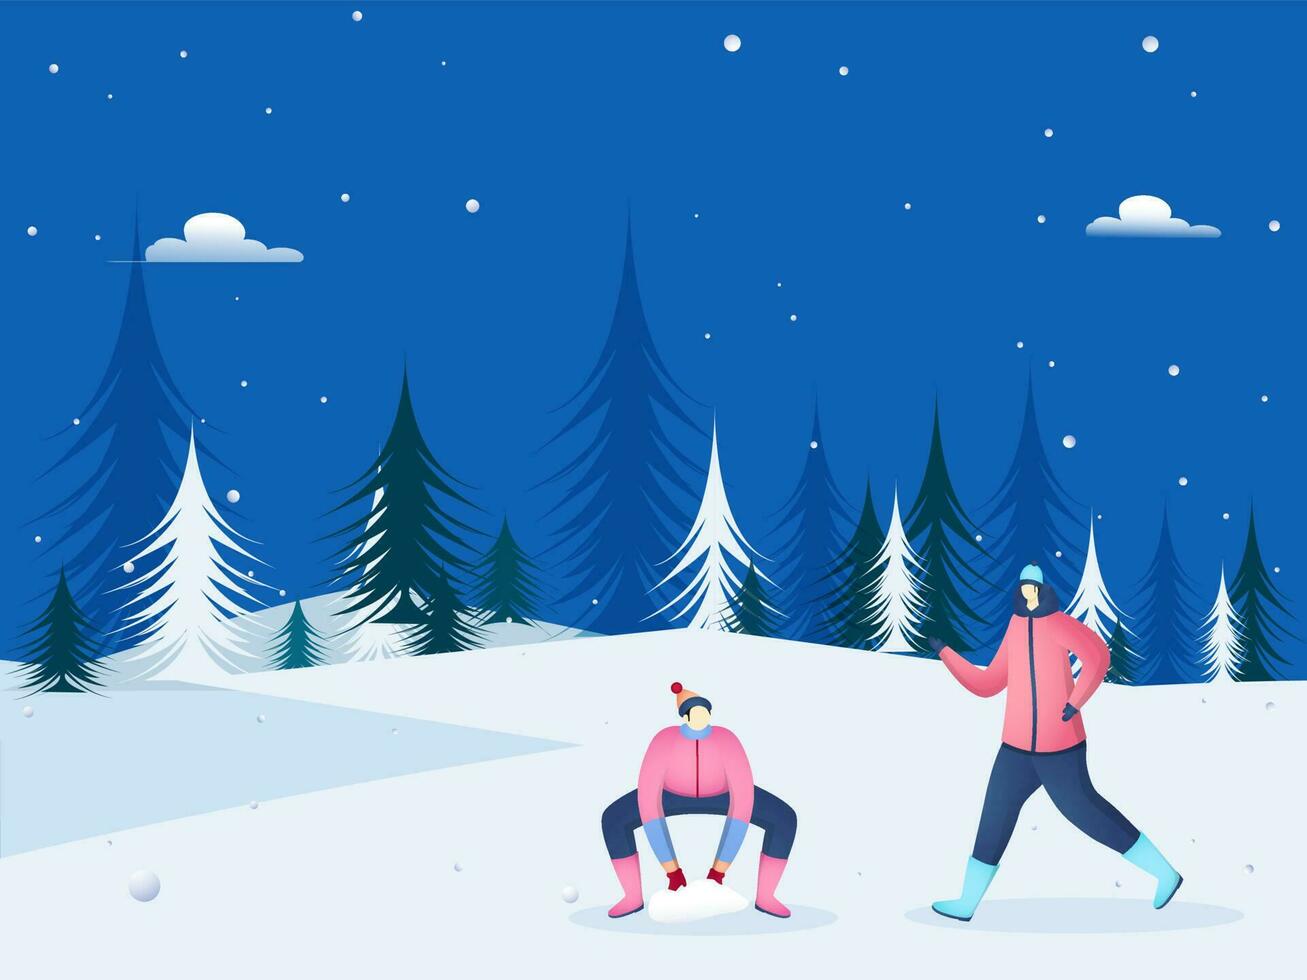 gesichtslos Männer Charakter genießen Schnee mit Baum dekoriert auf Blau und Weiß Hintergrund. vektor